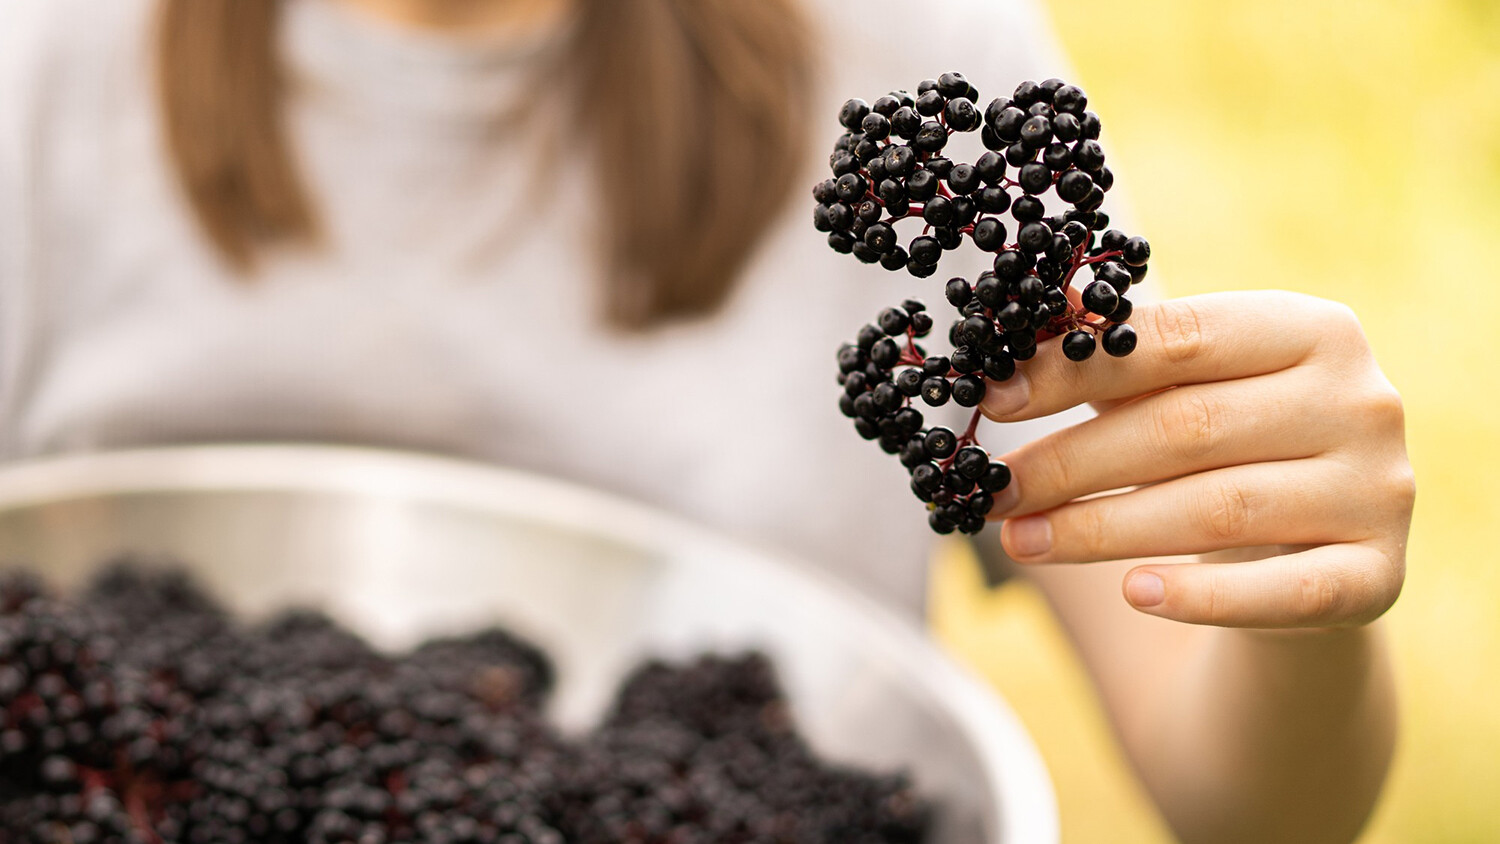 接骨木莓具有抗病毒、提升免疫力的功效